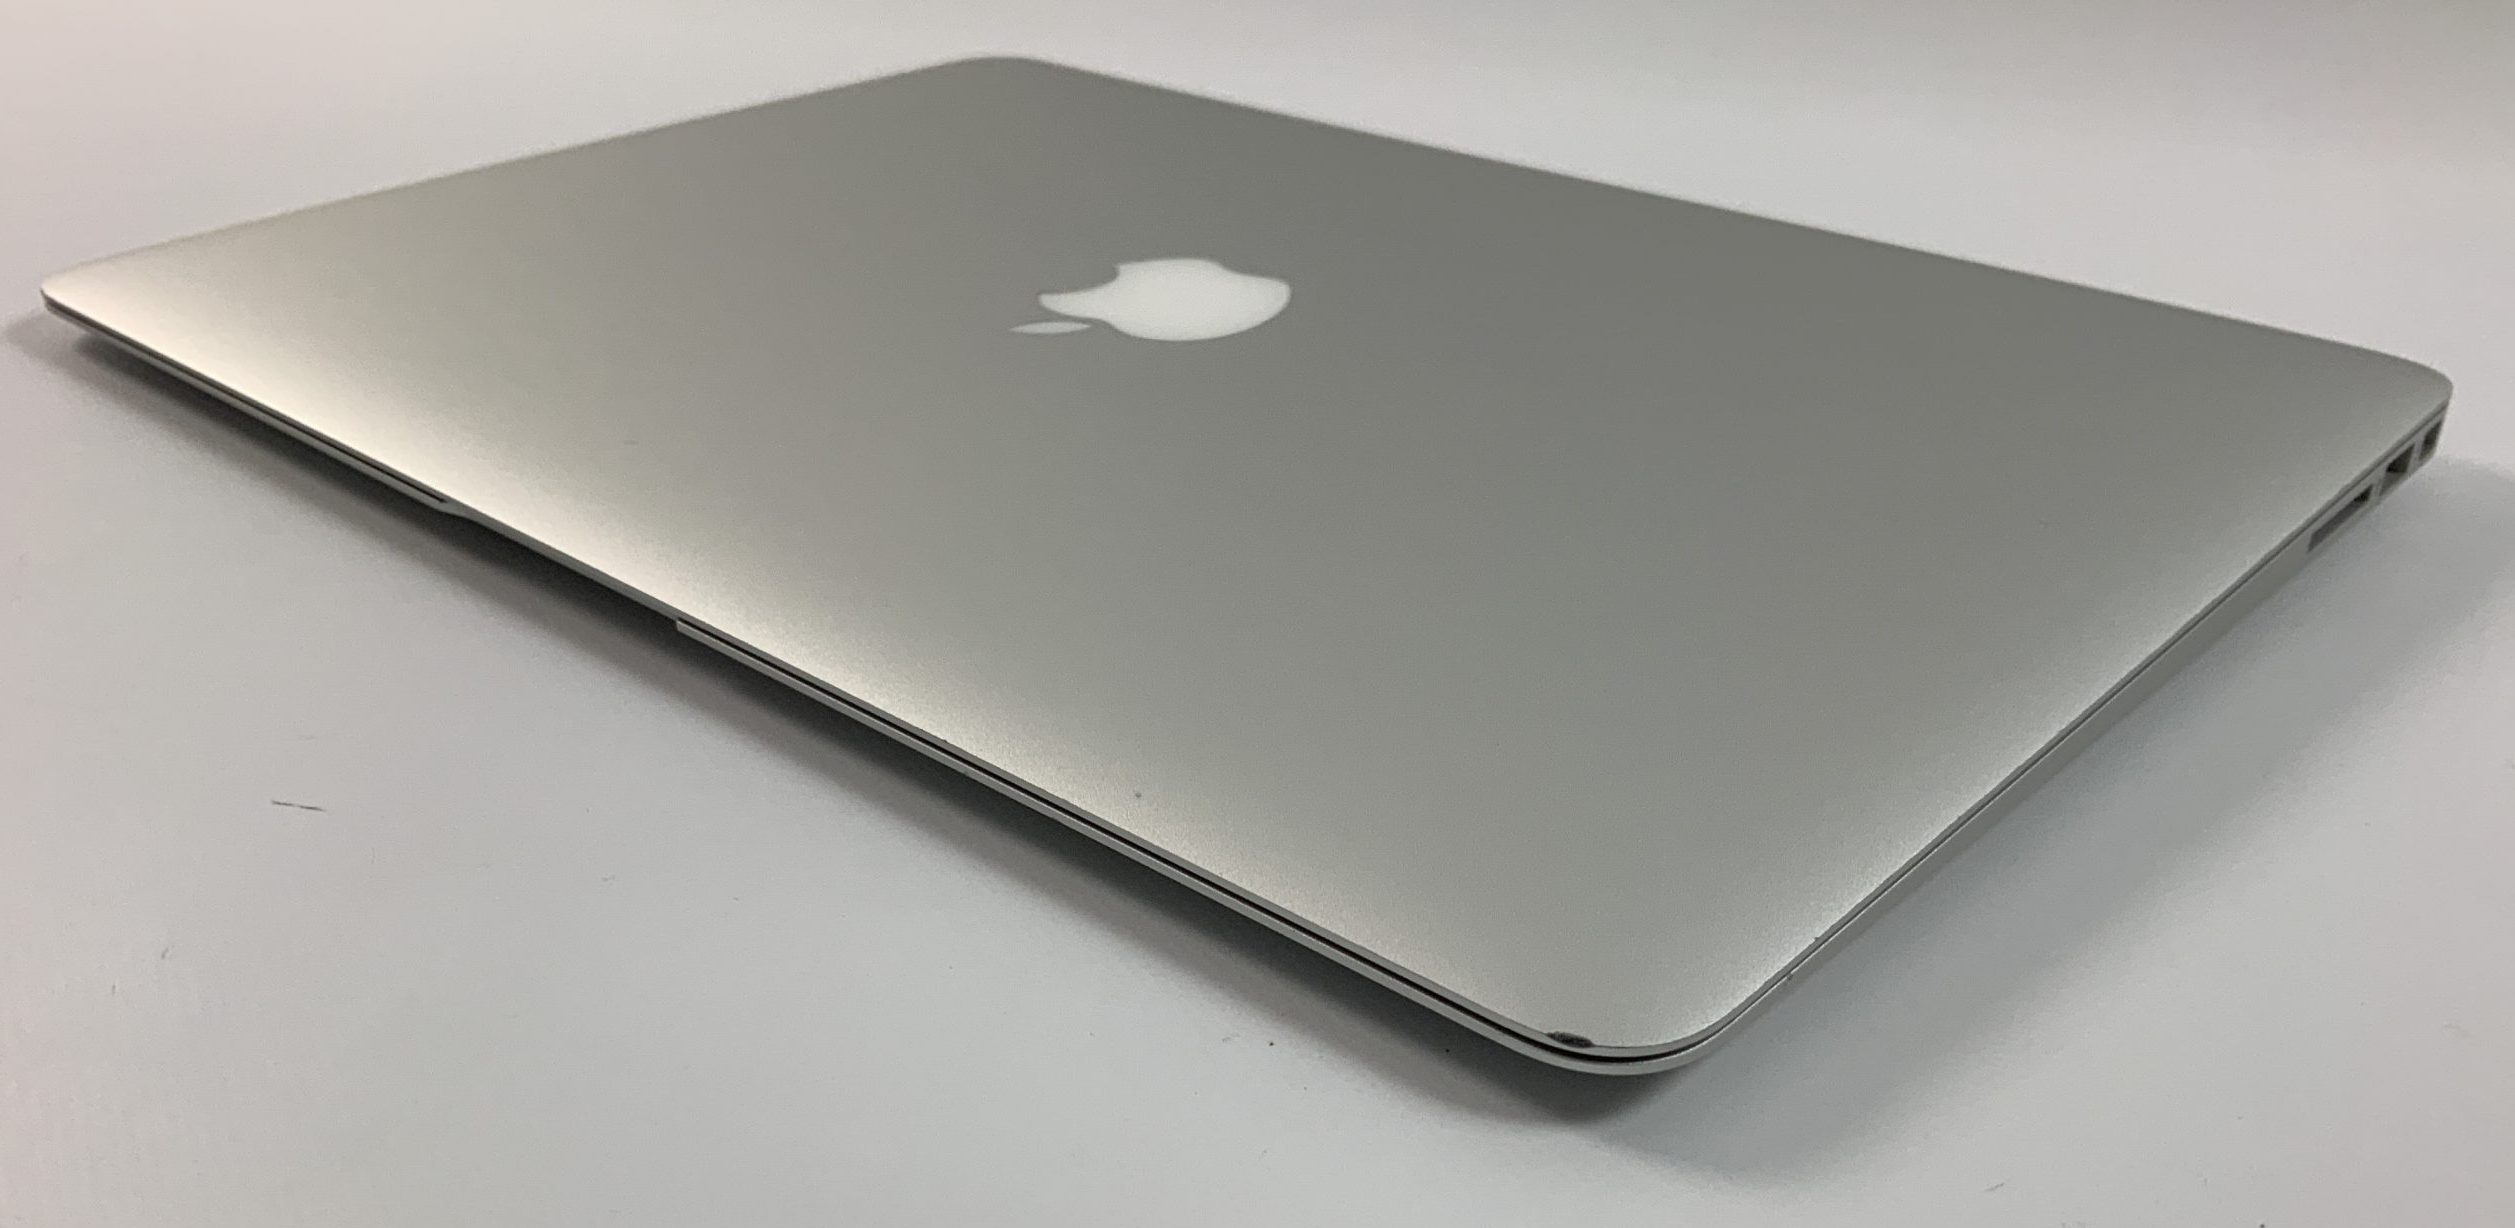 MacBook Air 13" Mid 2017 (Intel Core i5 1.8 GHz 8 GB RAM 256 GB SSD), Intel Core i5 1.8 GHz, 8 GB RAM, 256 GB SSD, imagen 5